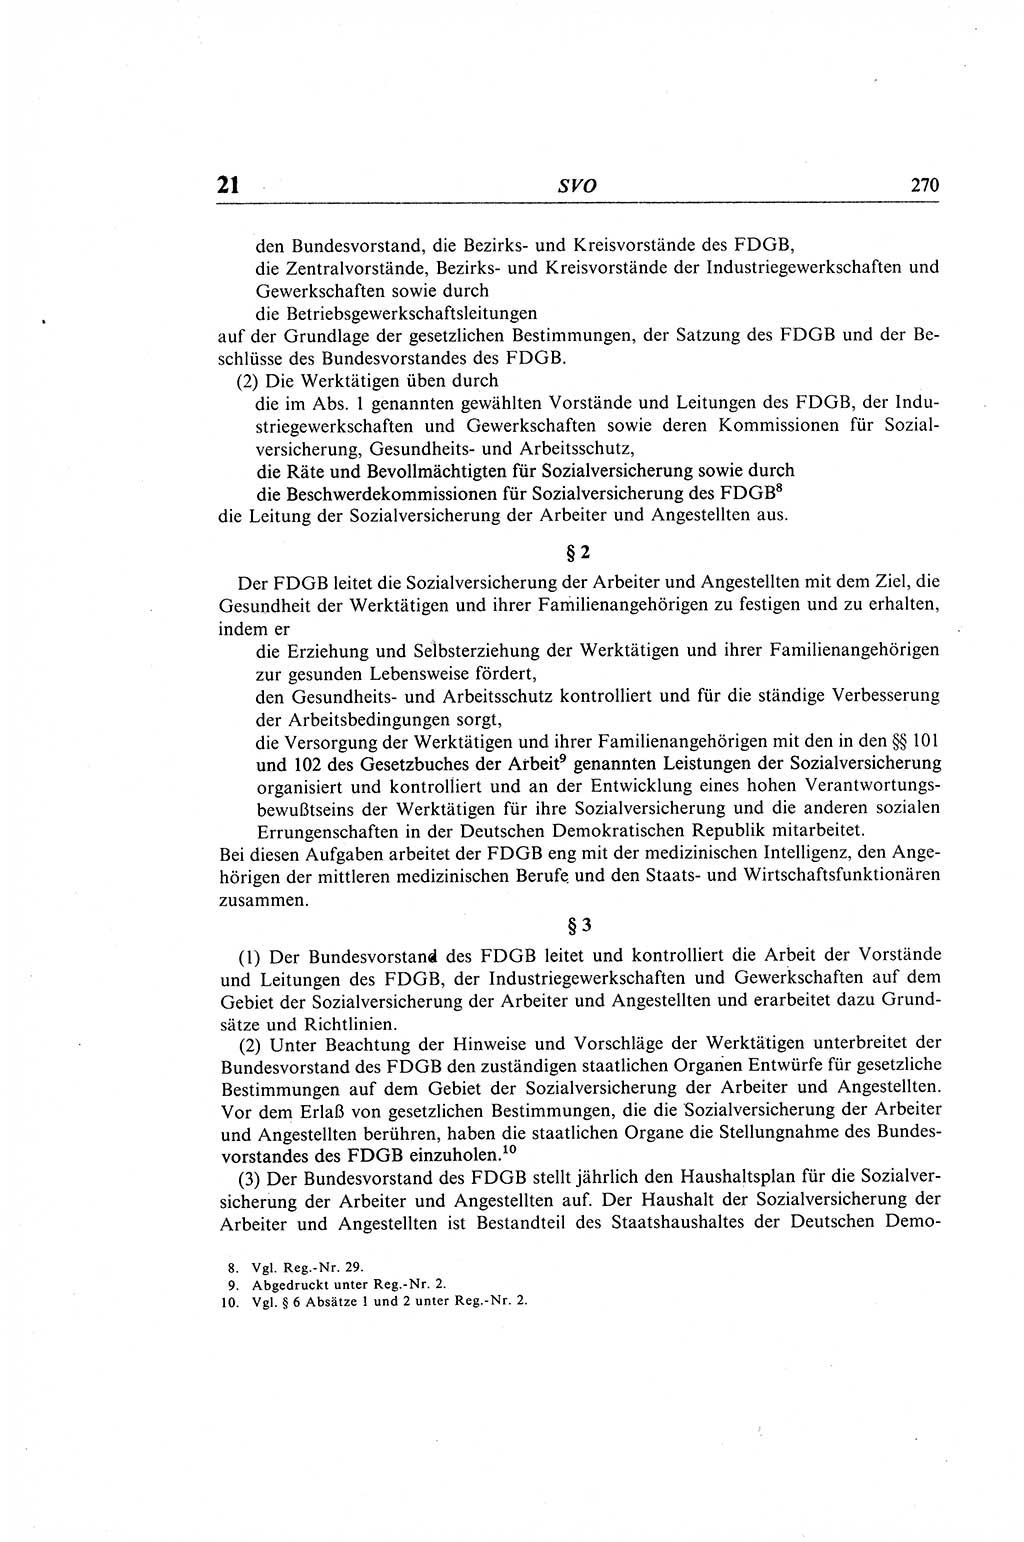 Gesetzbuch der Arbeit (GBA) und andere ausgewählte rechtliche Bestimmungen [Deutsche Demokratische Republik (DDR)] 1968, Seite 270 (GBA DDR 1968, S. 270)